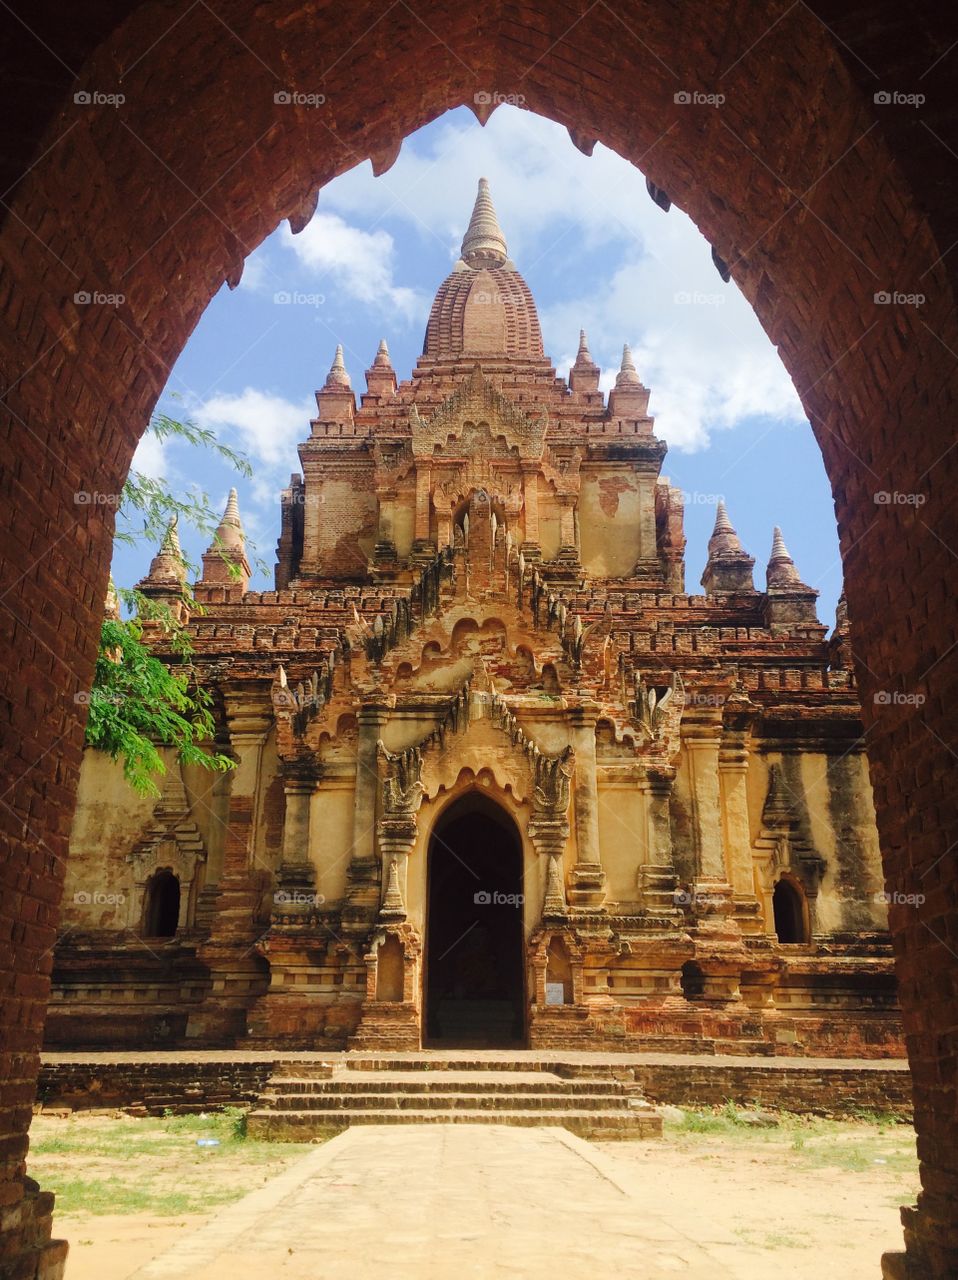 View of Htilominlo temple, Myanmar